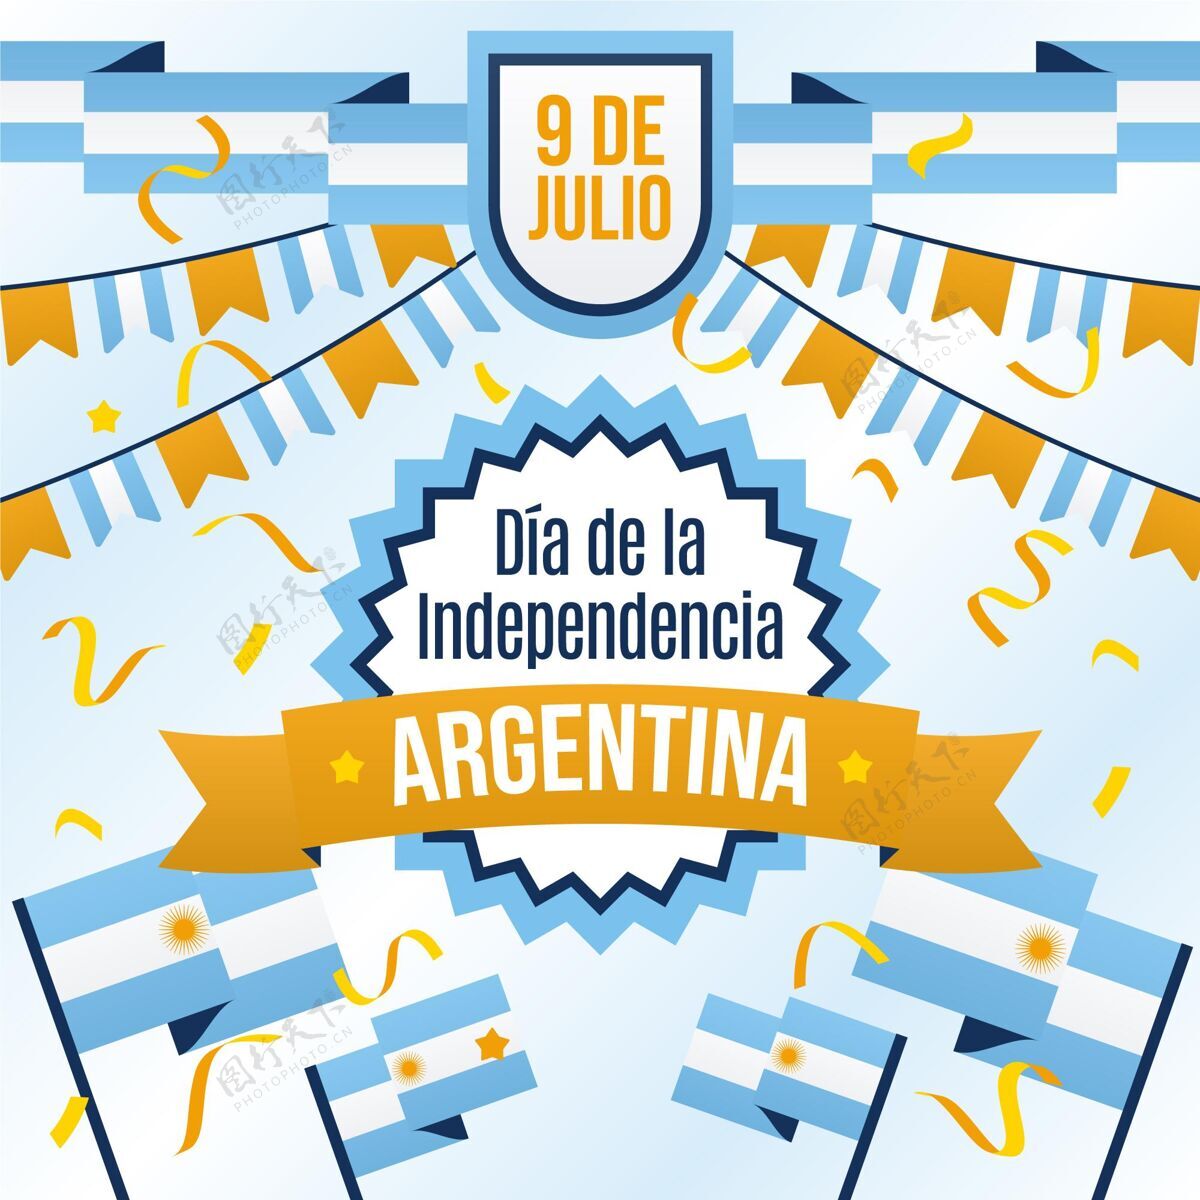 自由阿根廷独立宣言9号公寓阿根廷旗帜事件